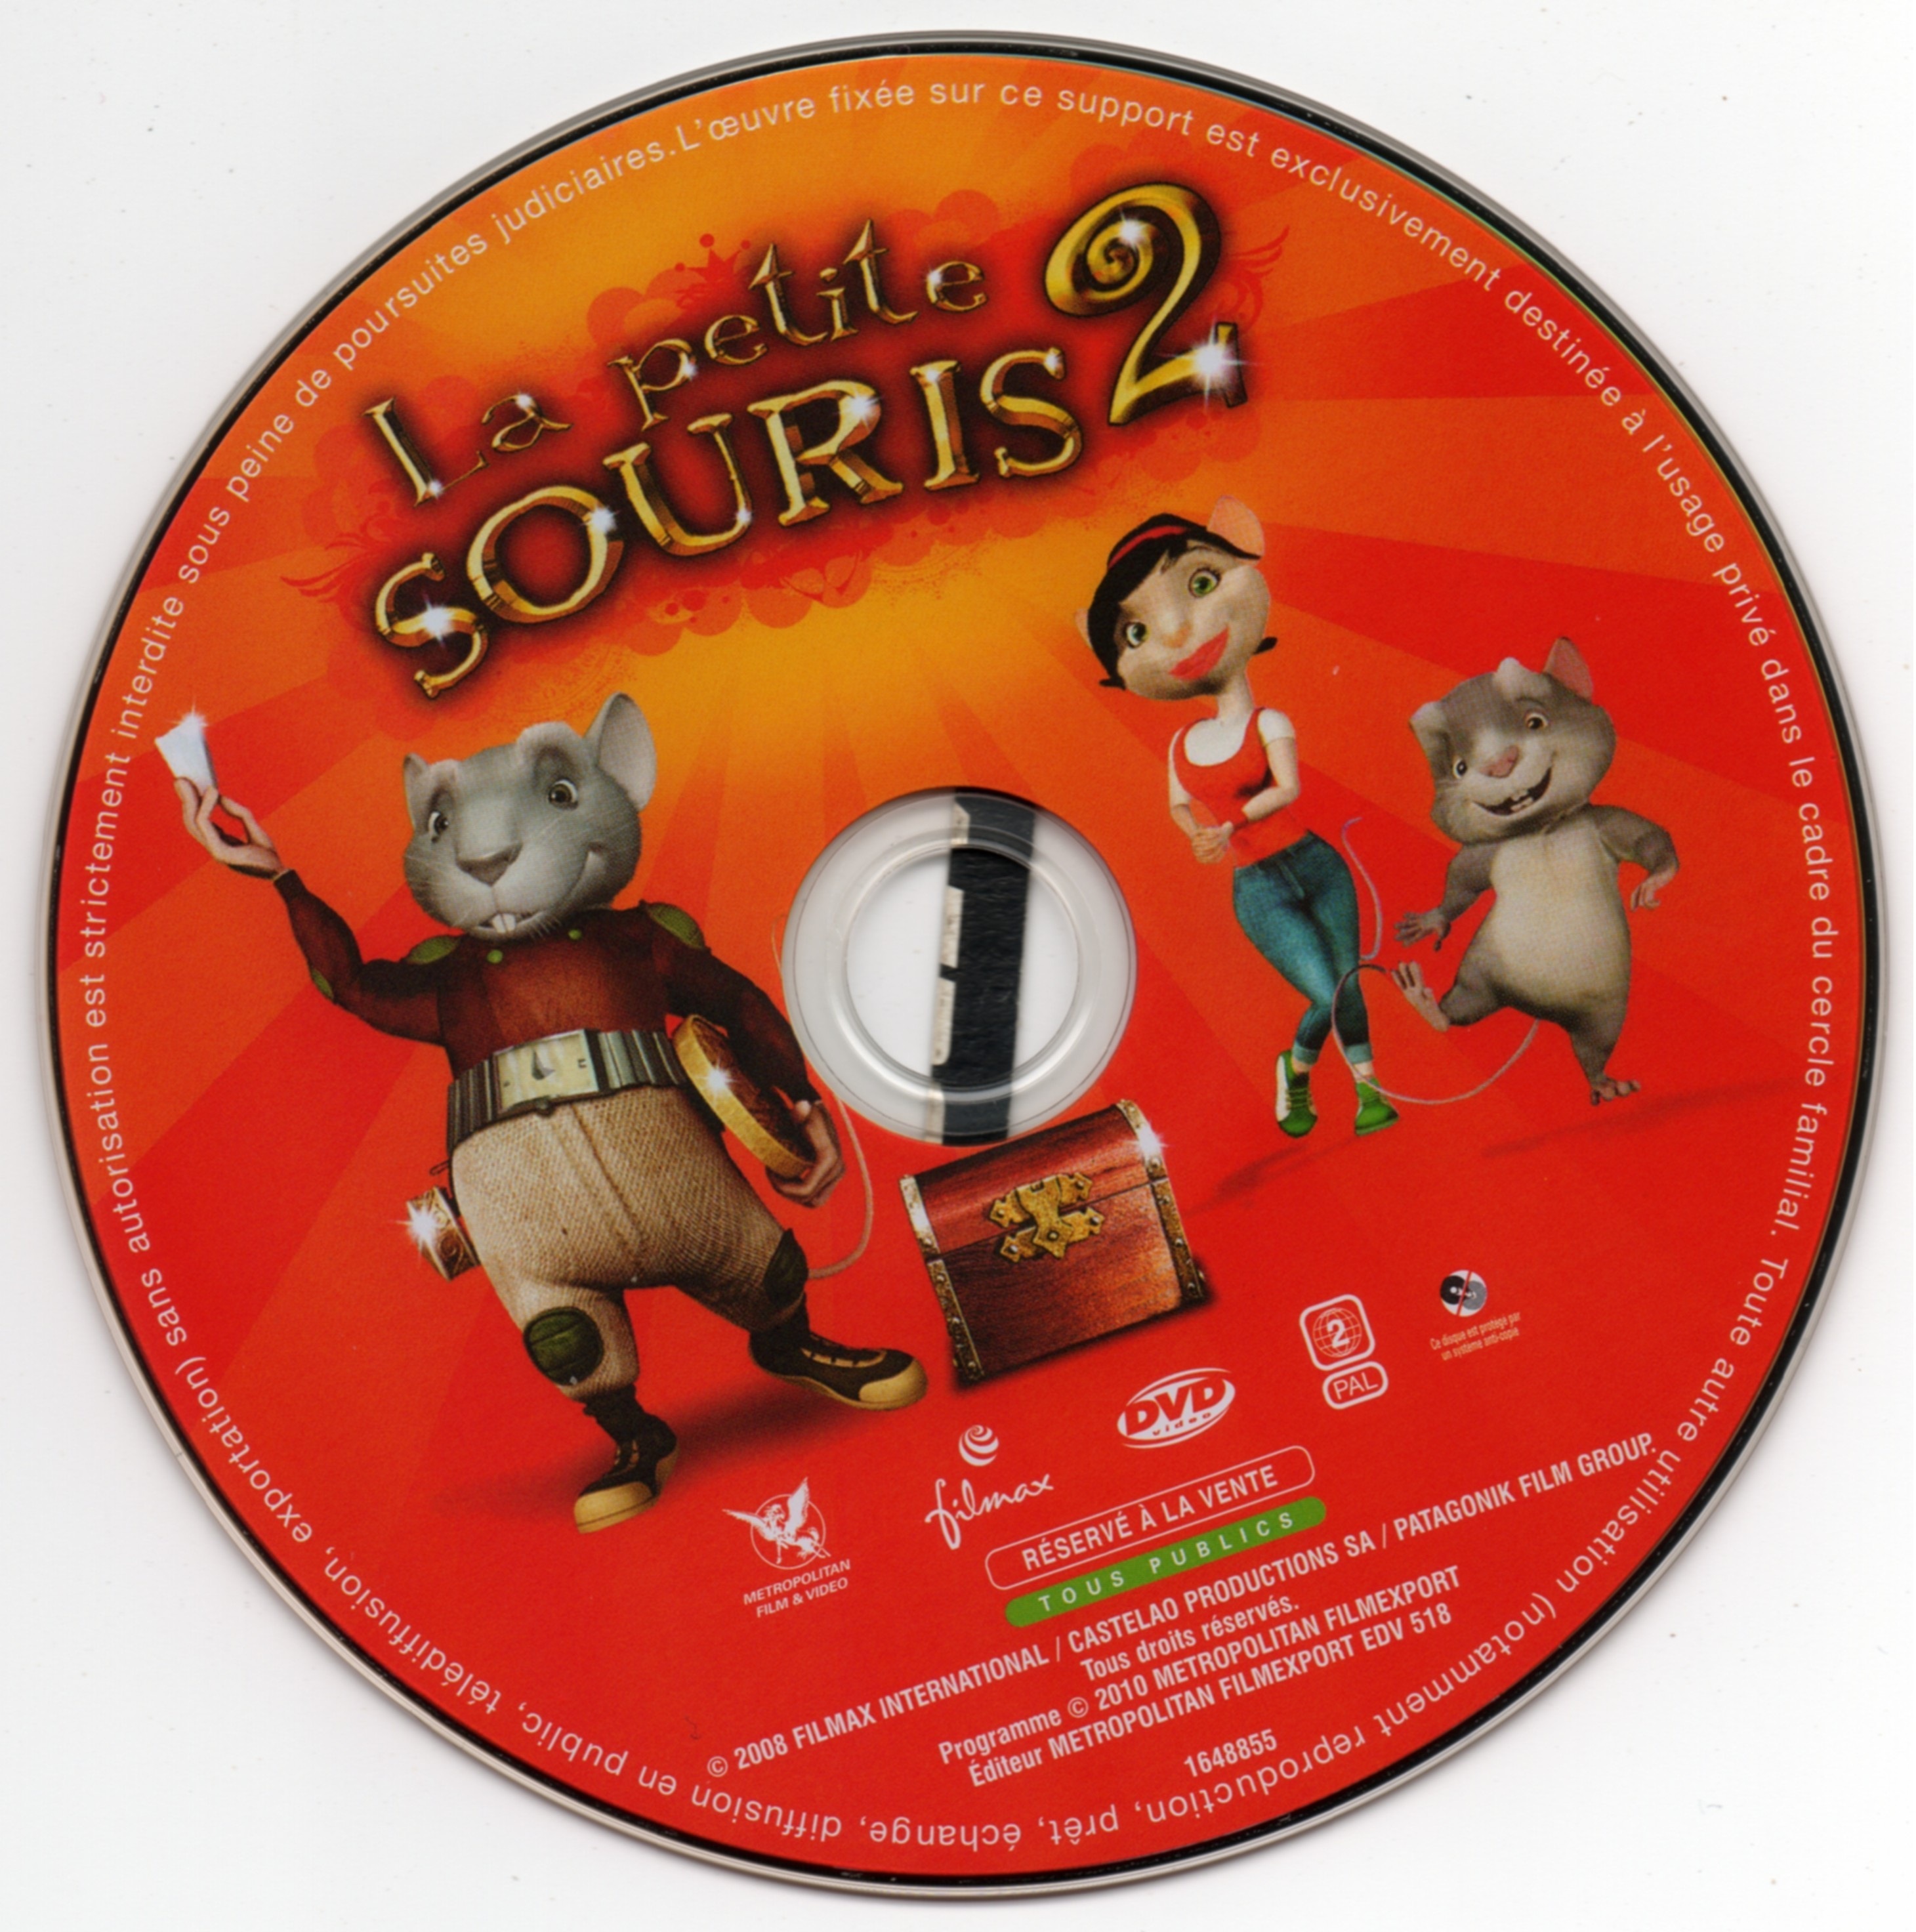 Sticker de La petite souris 2 - Cinéma Passion